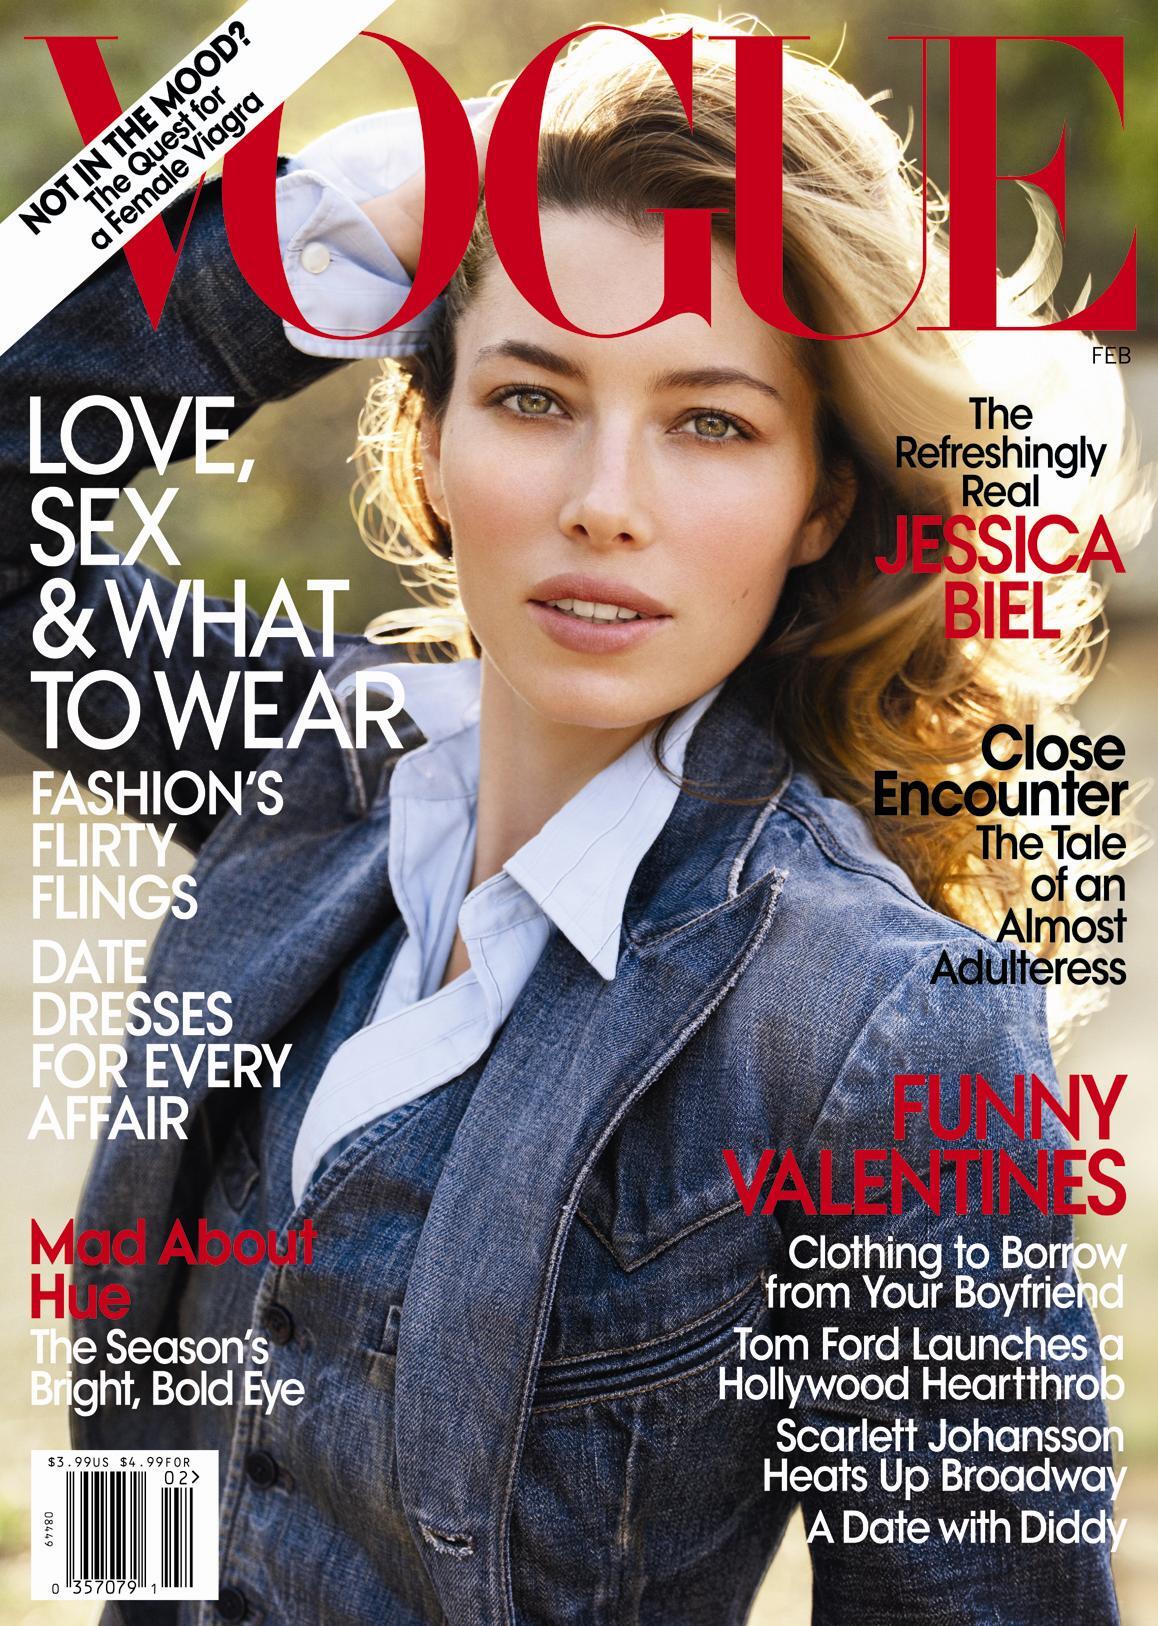 Джессика Бил в журнале Vogue. Февраль 2010